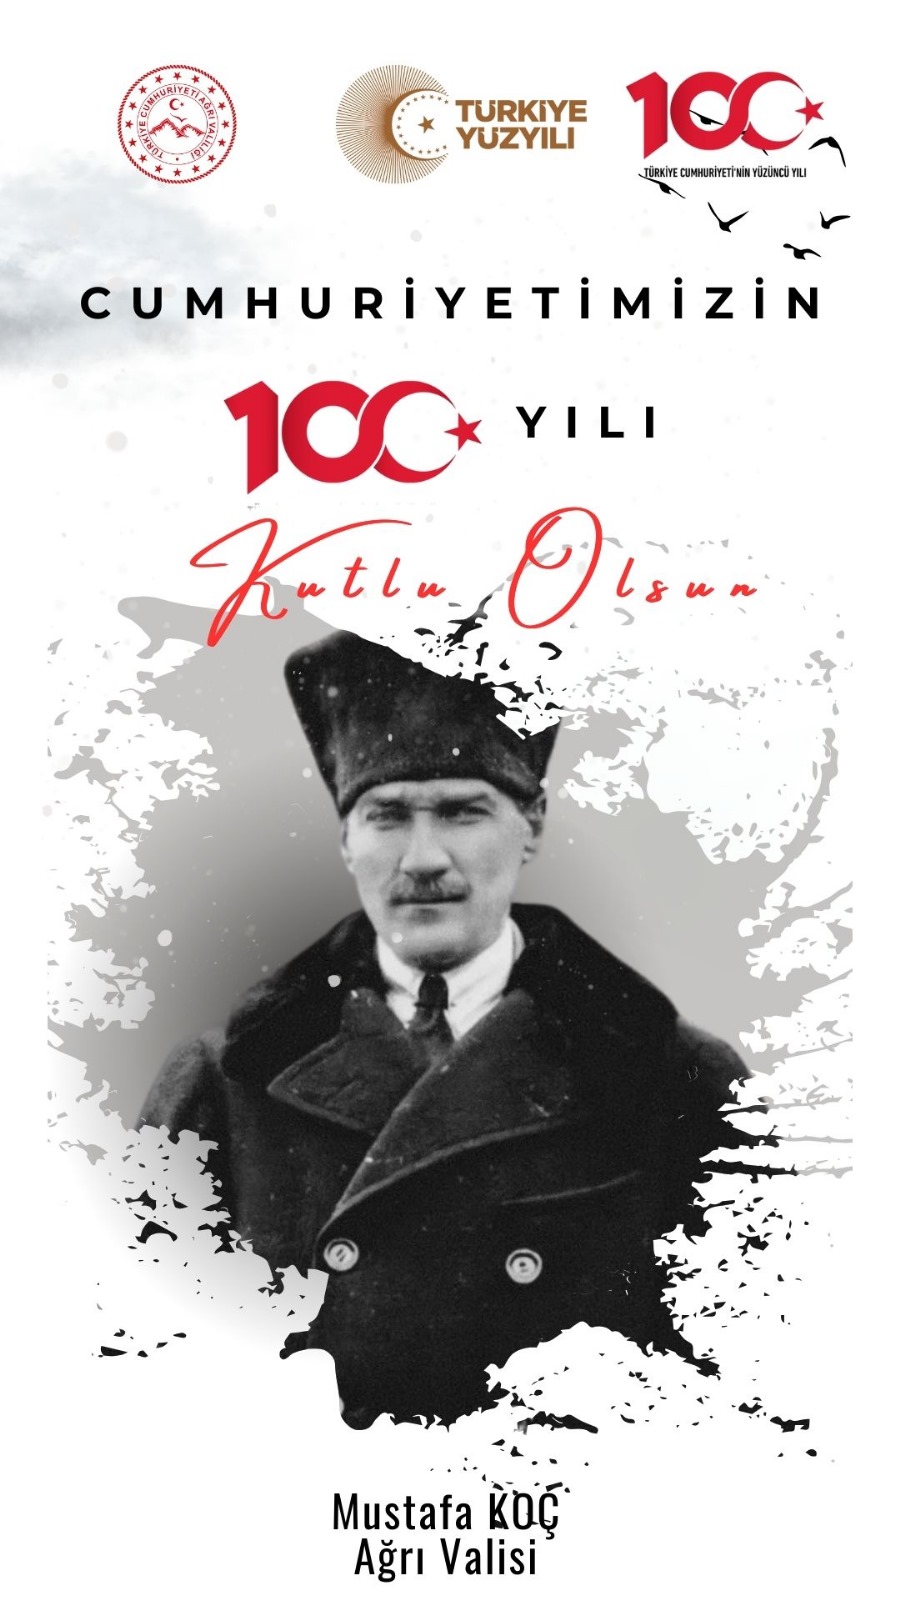 Valimiz Sayın Mustafa KOÇ'un, Cumhuriyetimizin 100. Yılı Kutlama Mesajı